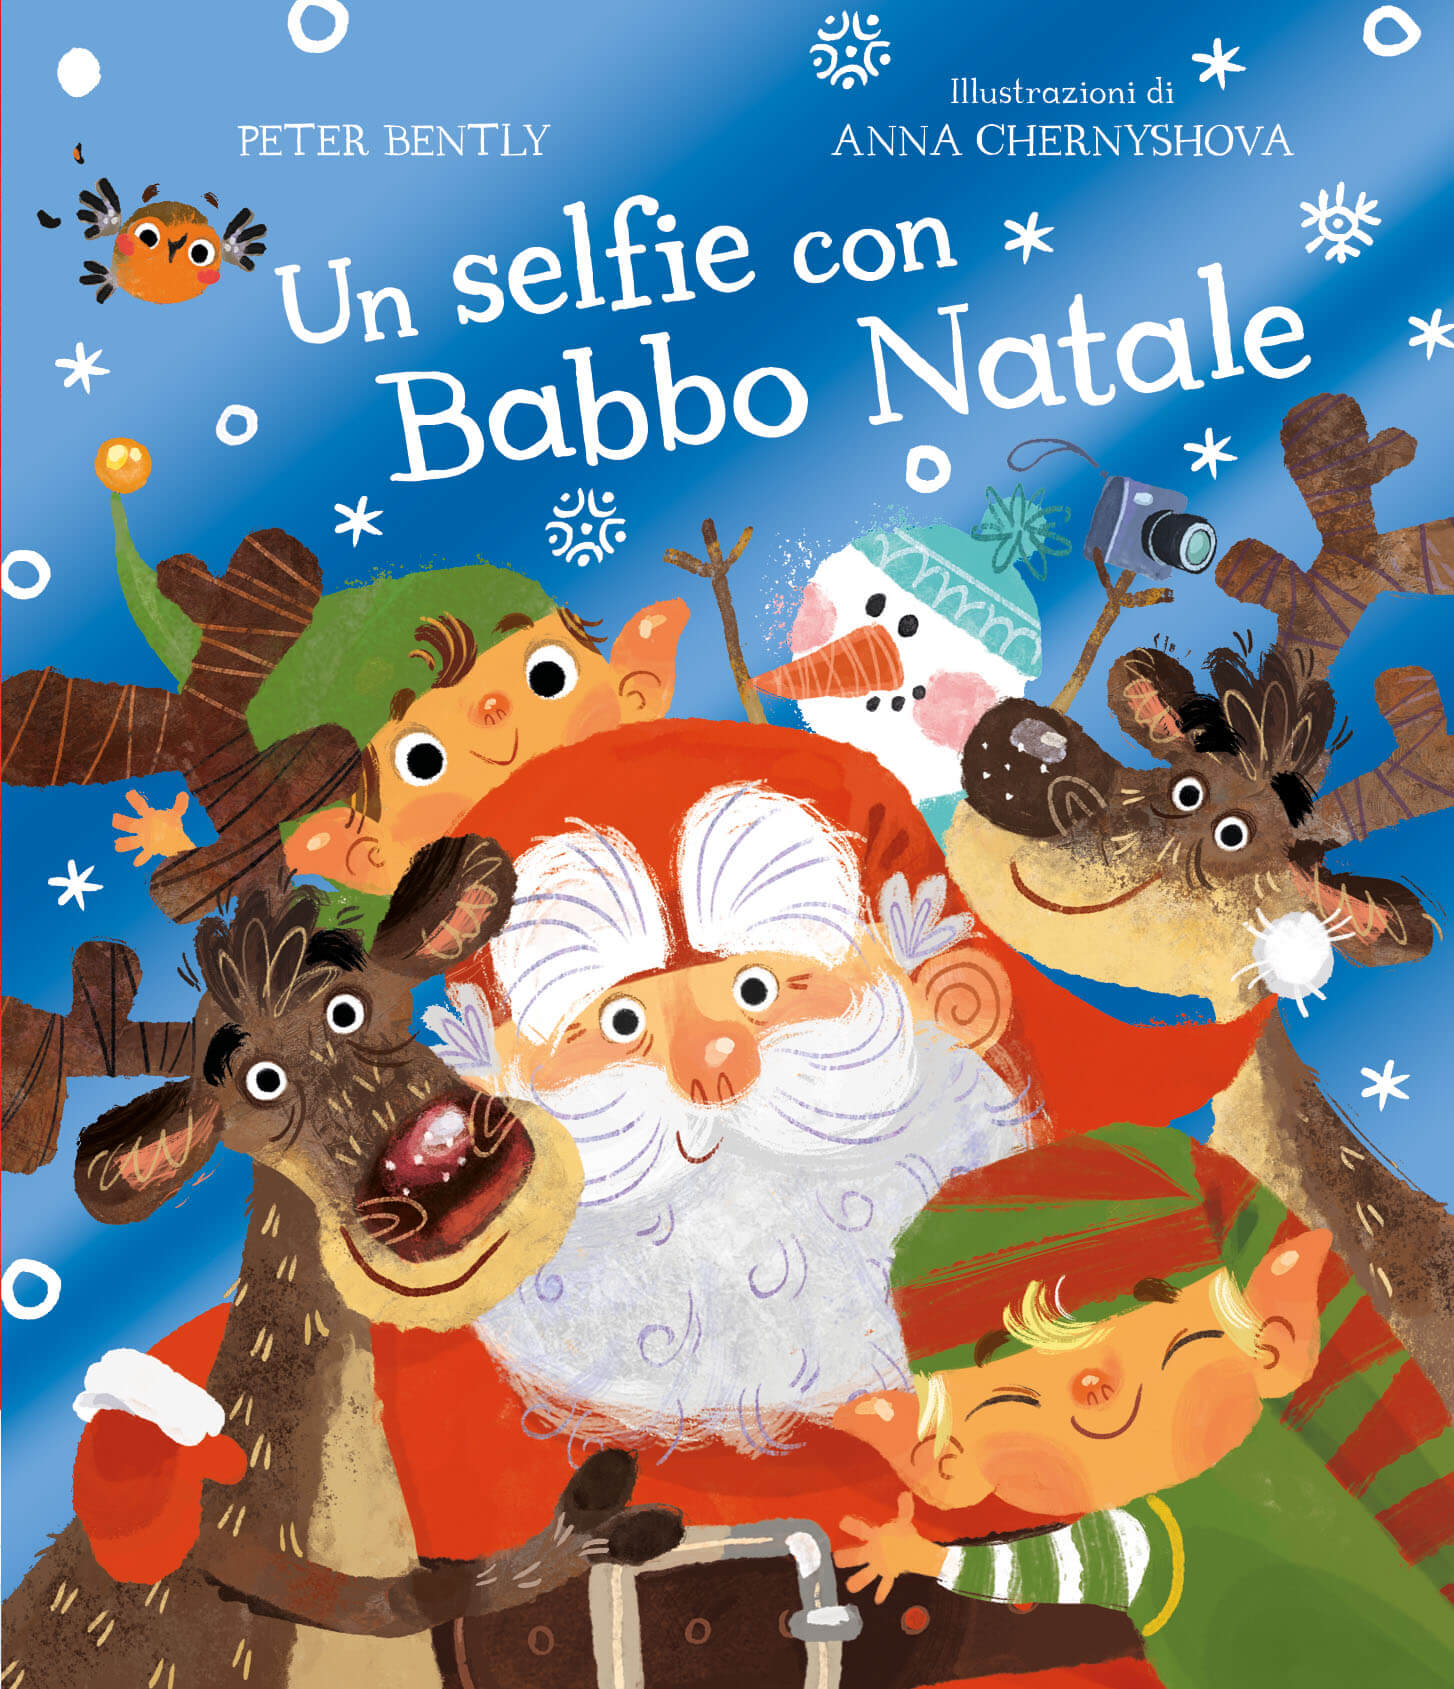 Babbo 4 Natale.4 Dicembre Alle Ore 17 Lettura Animata Un Selfie Con Babbo Natale Storie Sotto Coperta